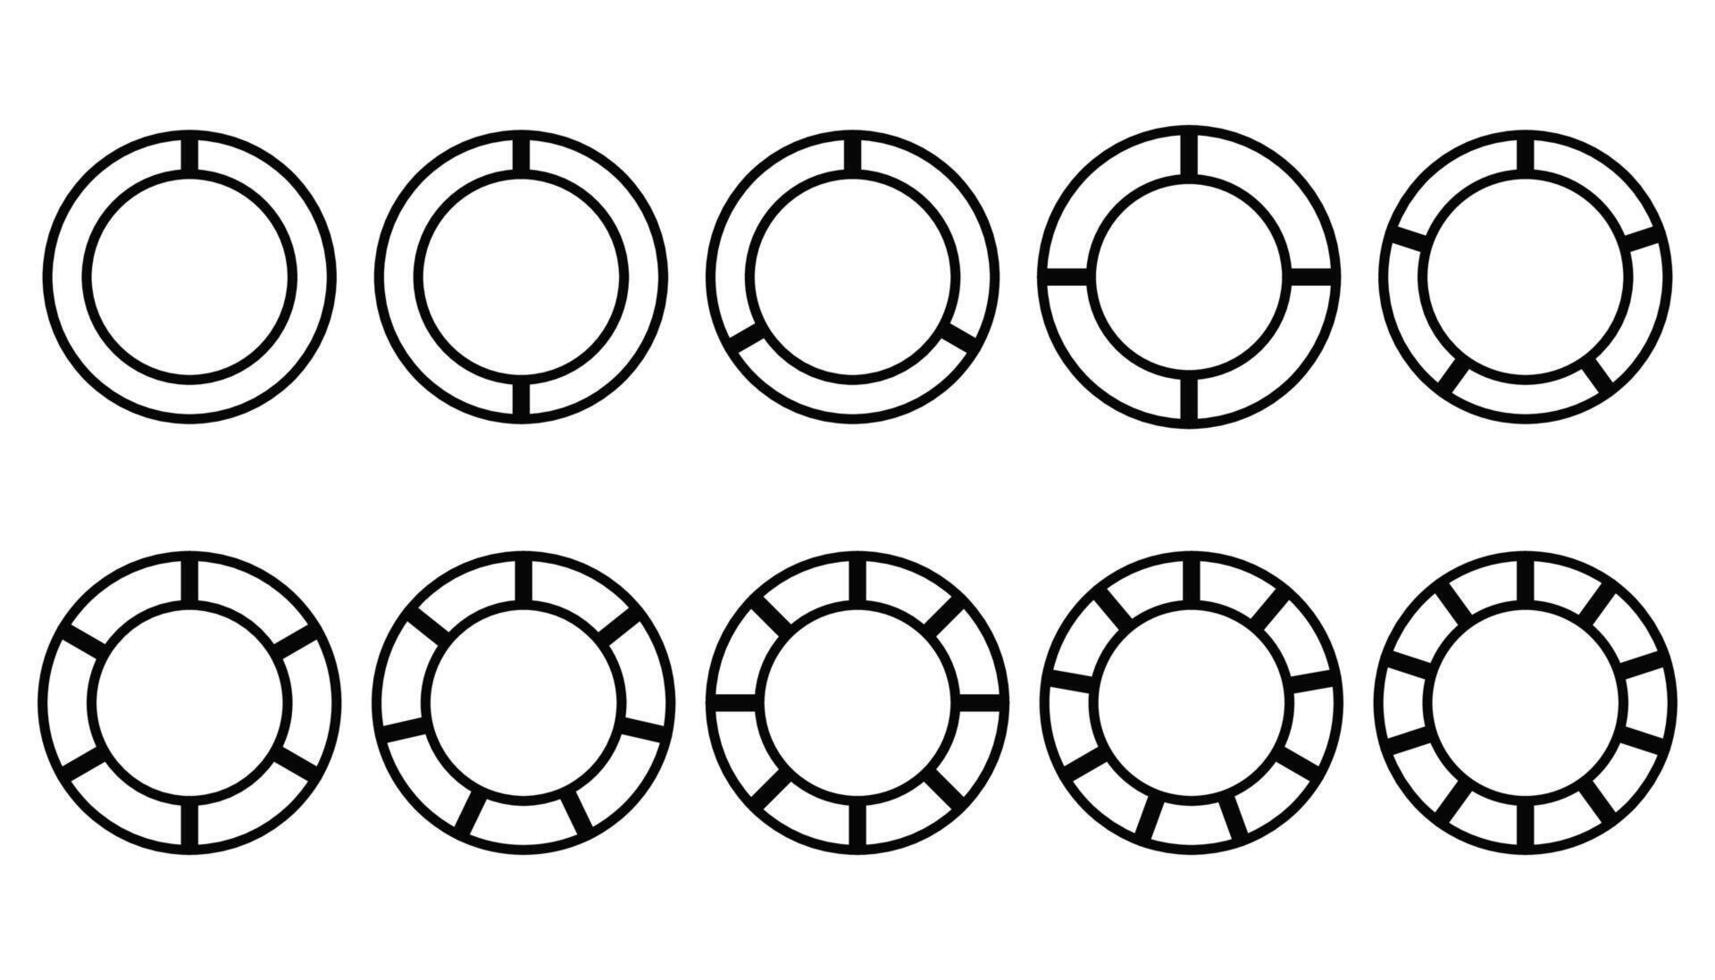 uppsättning av annorlunda cirklar paj diagram diagram. olika sektorer dela upp de cirkel in i likvärdig delar. vektor